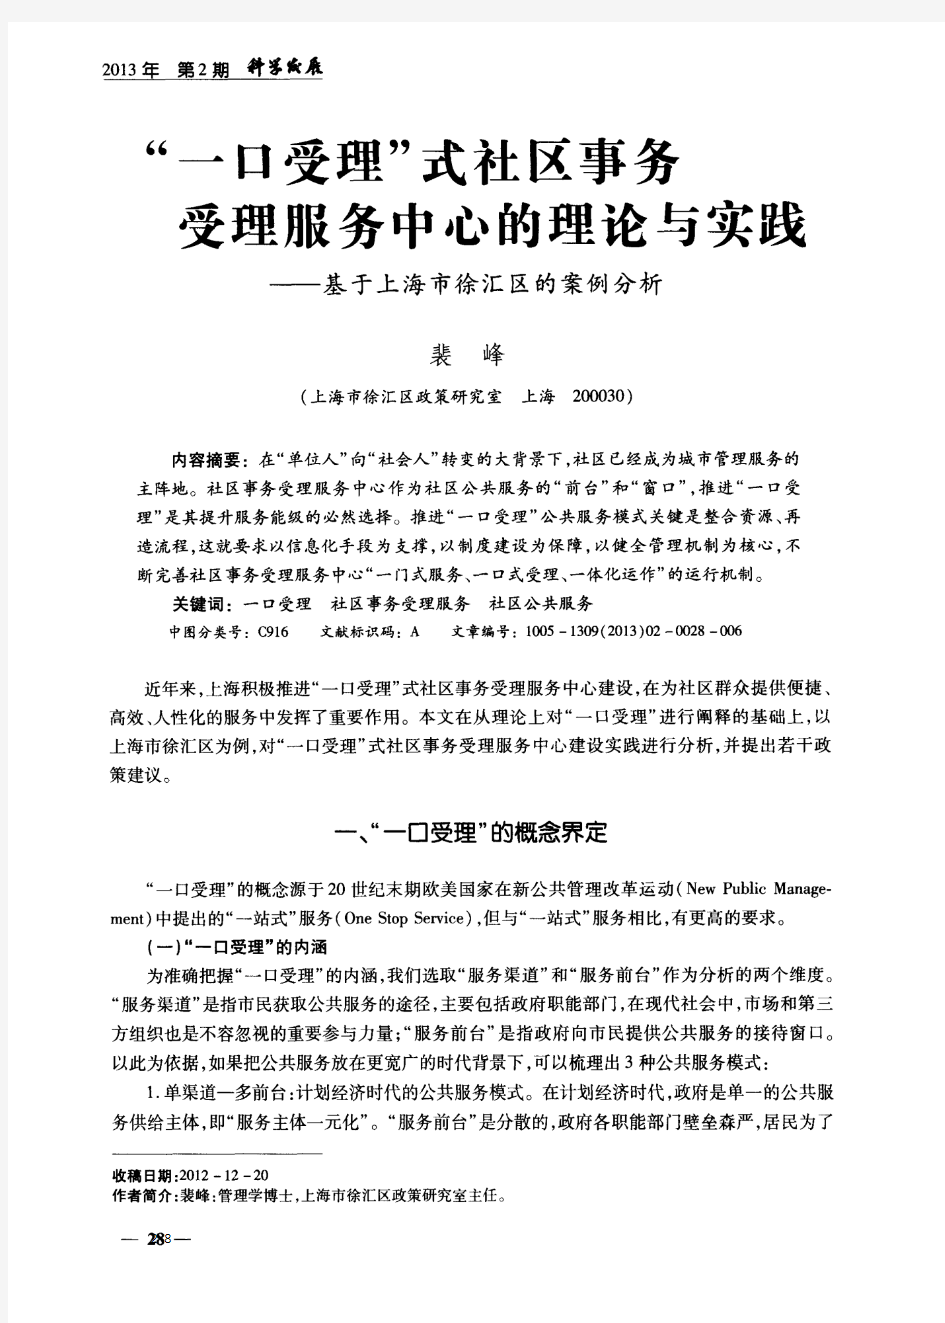 “一口受理”式社区事务受理服务中心的理论与实践——基于上海市徐汇区的案例分析-论文